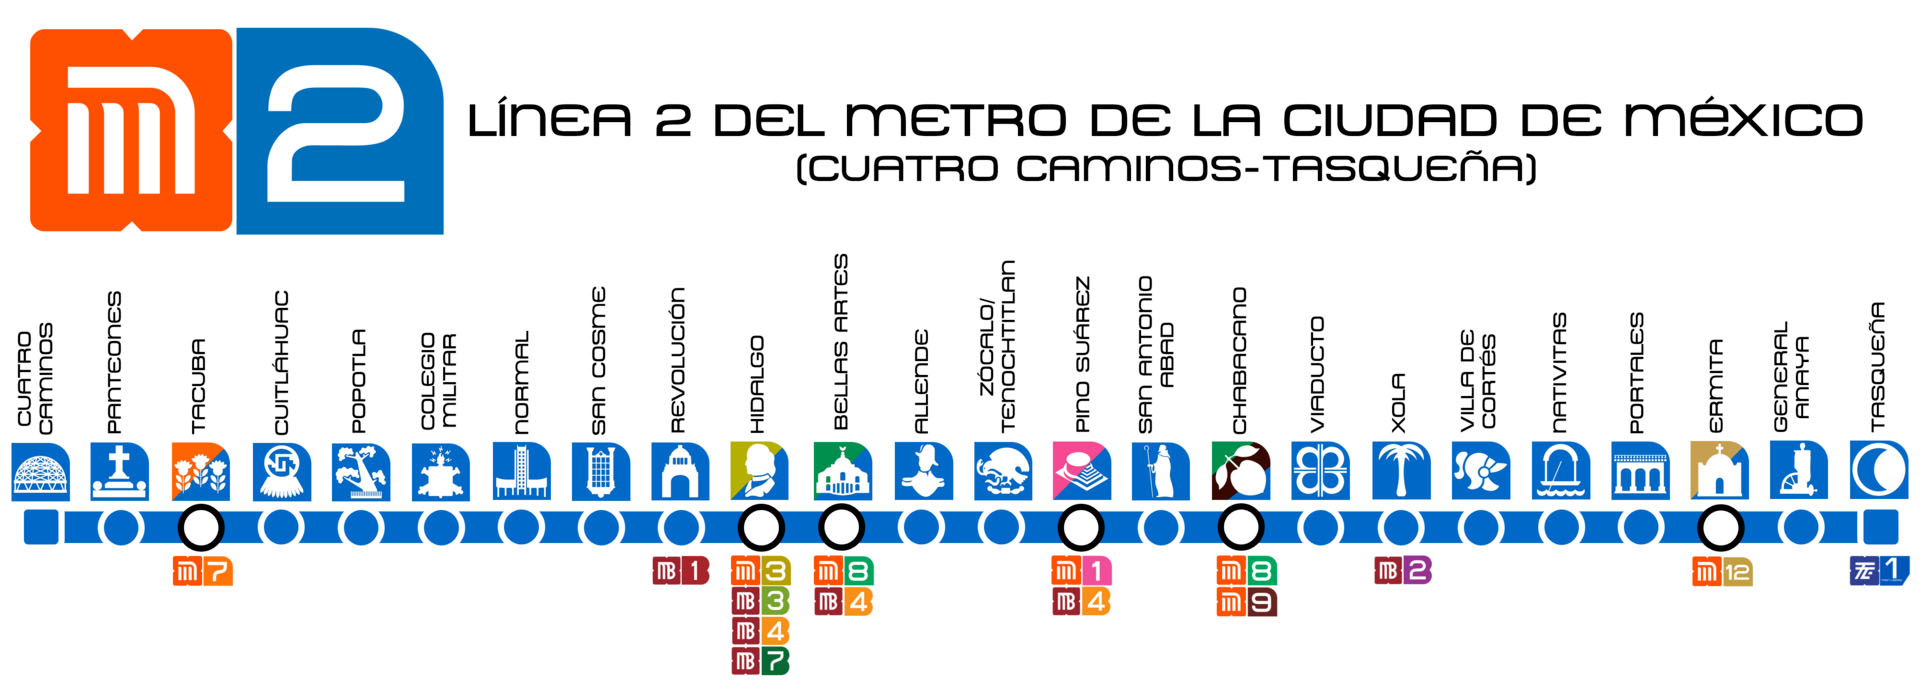 Arriba 98+ imagen metro viaducto linea azul - Expoproveedorindustrial.mx